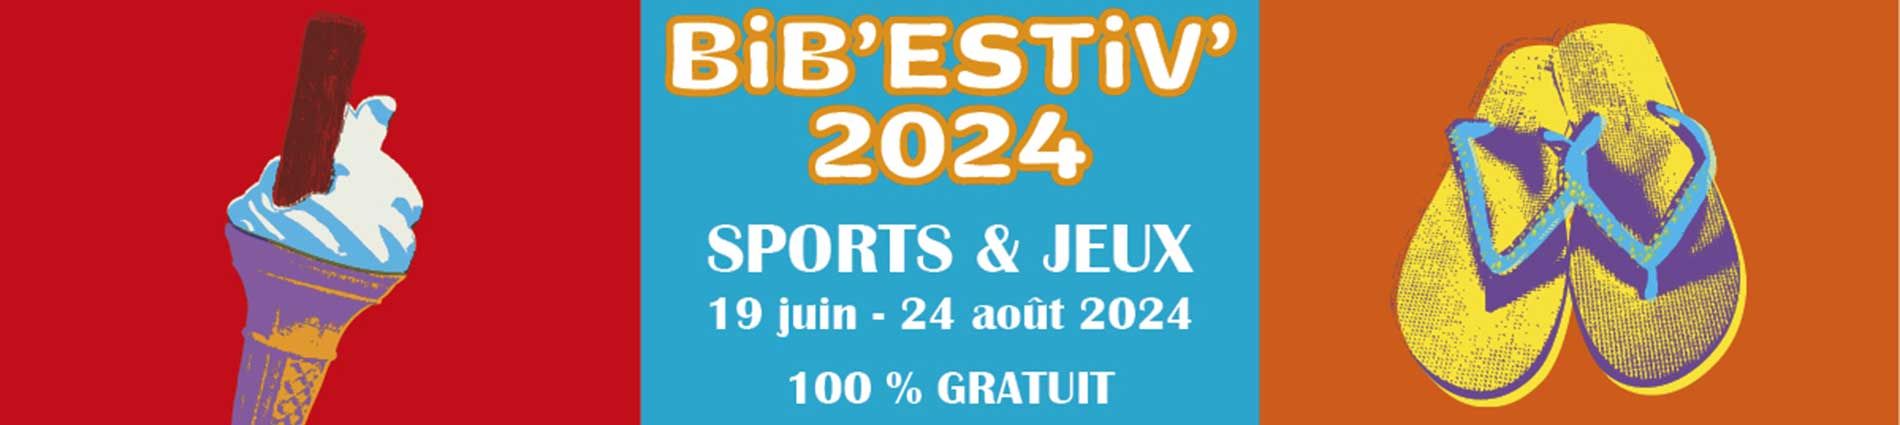 Bib' Estiv' : sports et jeux du 18 juin au 24 août 2024 - 100% gratuit